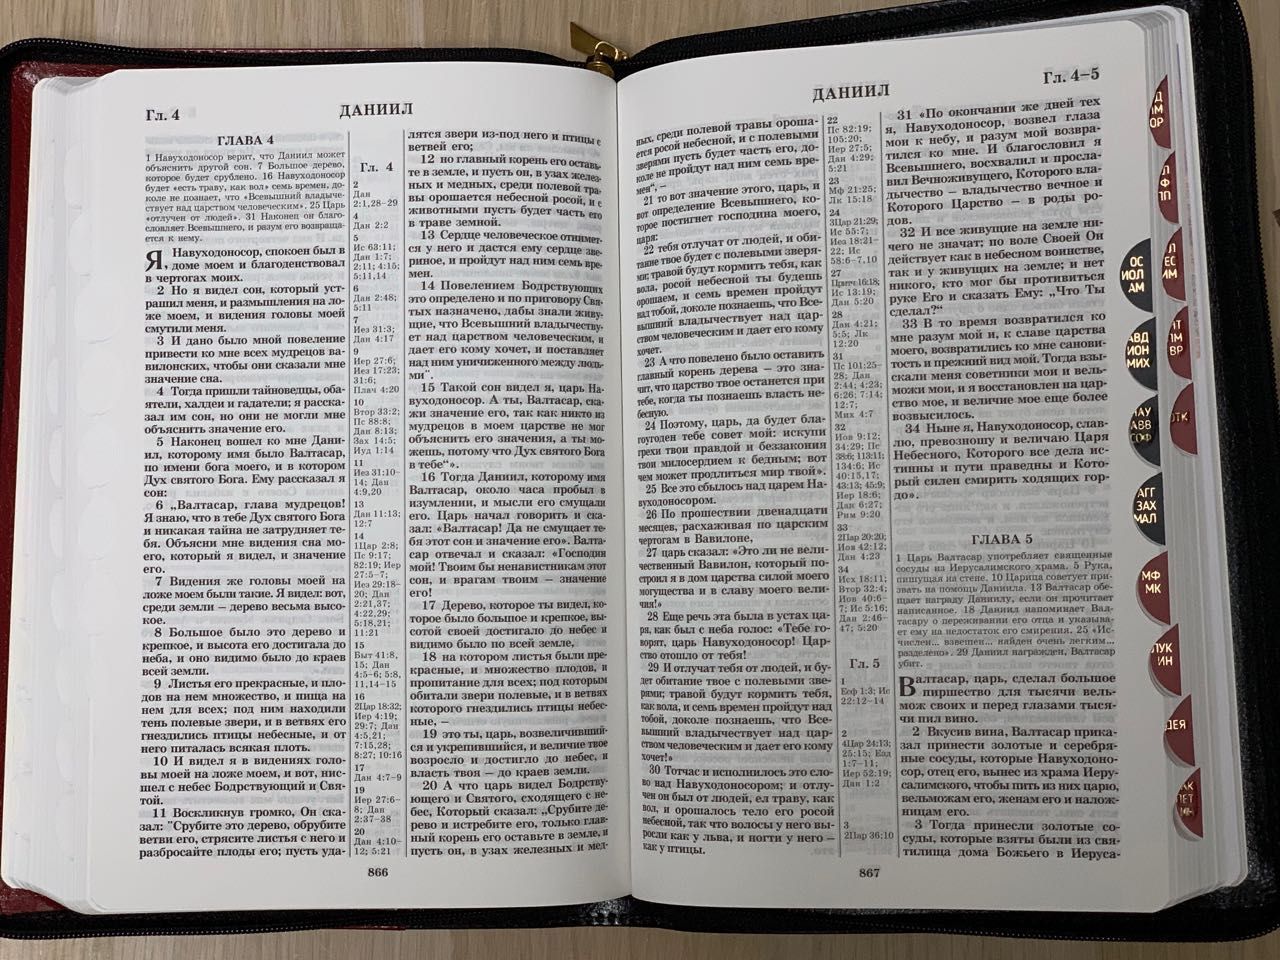 БИБЛИЯ 077zti формат, переплет из натуральной кожи на молнии с индексами, надпись золотом "Библия", цвет темно-коричневый металлик, большой формат, 180*260 мм, цветные карты, крупный шрифт